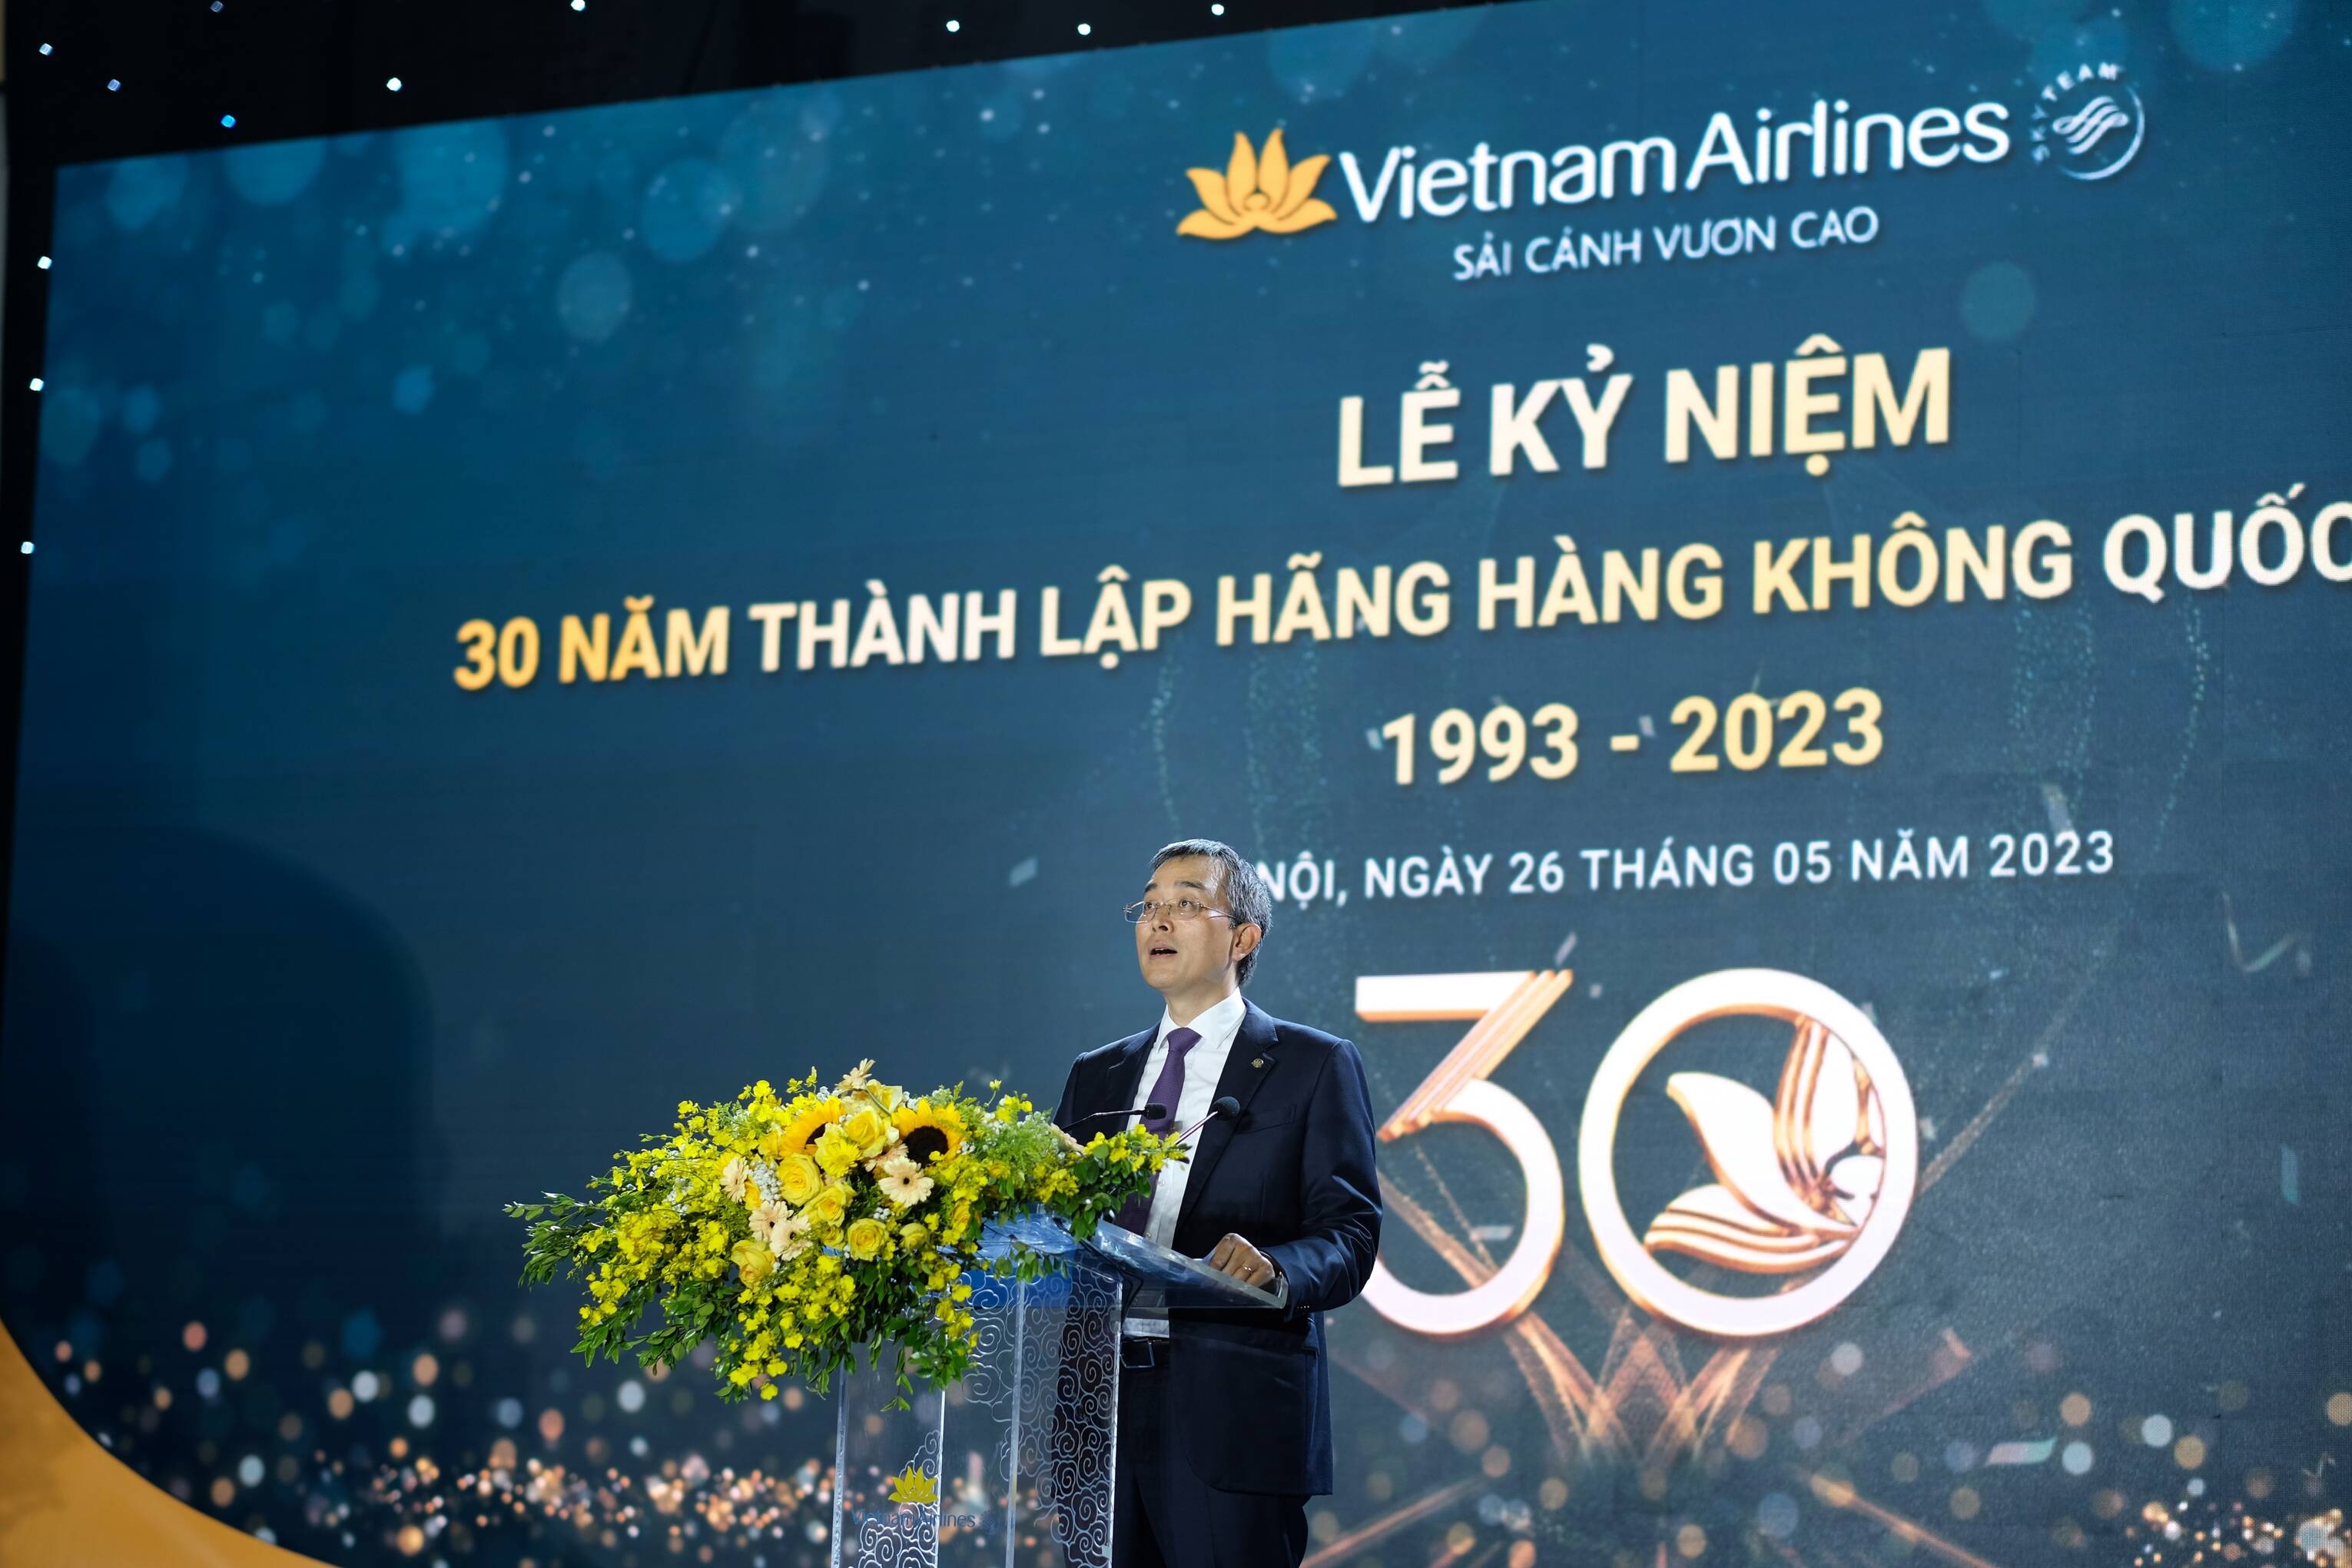 Ông Đặng Ngọc Hòa, Chủ tịch HĐQT Vietnam Airlines phát biểu trong buổi lễ kỷ niệm 30 ngày thành lập Hãng HKQG Việt Nam